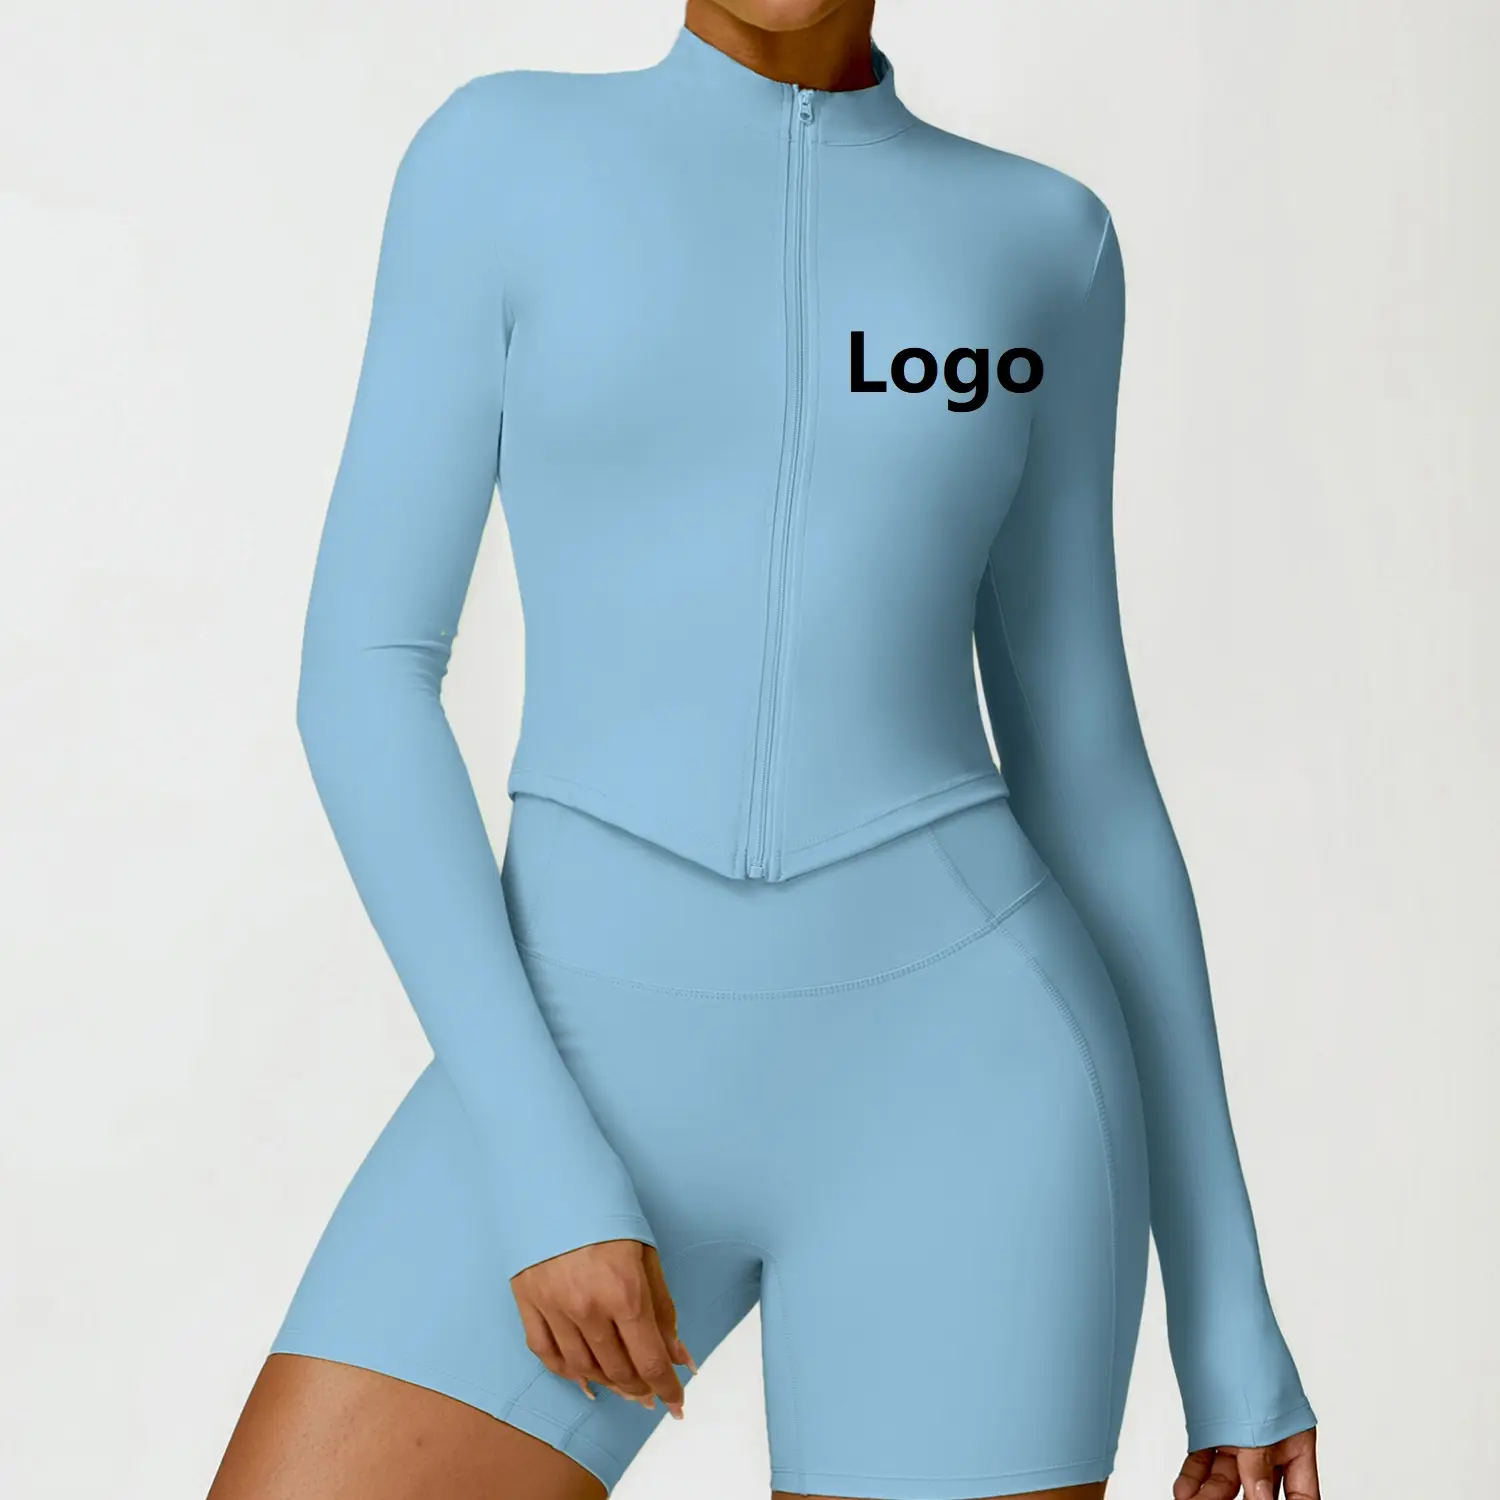 Schlussverkauf Training mehrfarbig Sportbekleidung bequemes Design Yoga-Top Reißverschlussjacke mit Tasche Trainingsjacken für Damen